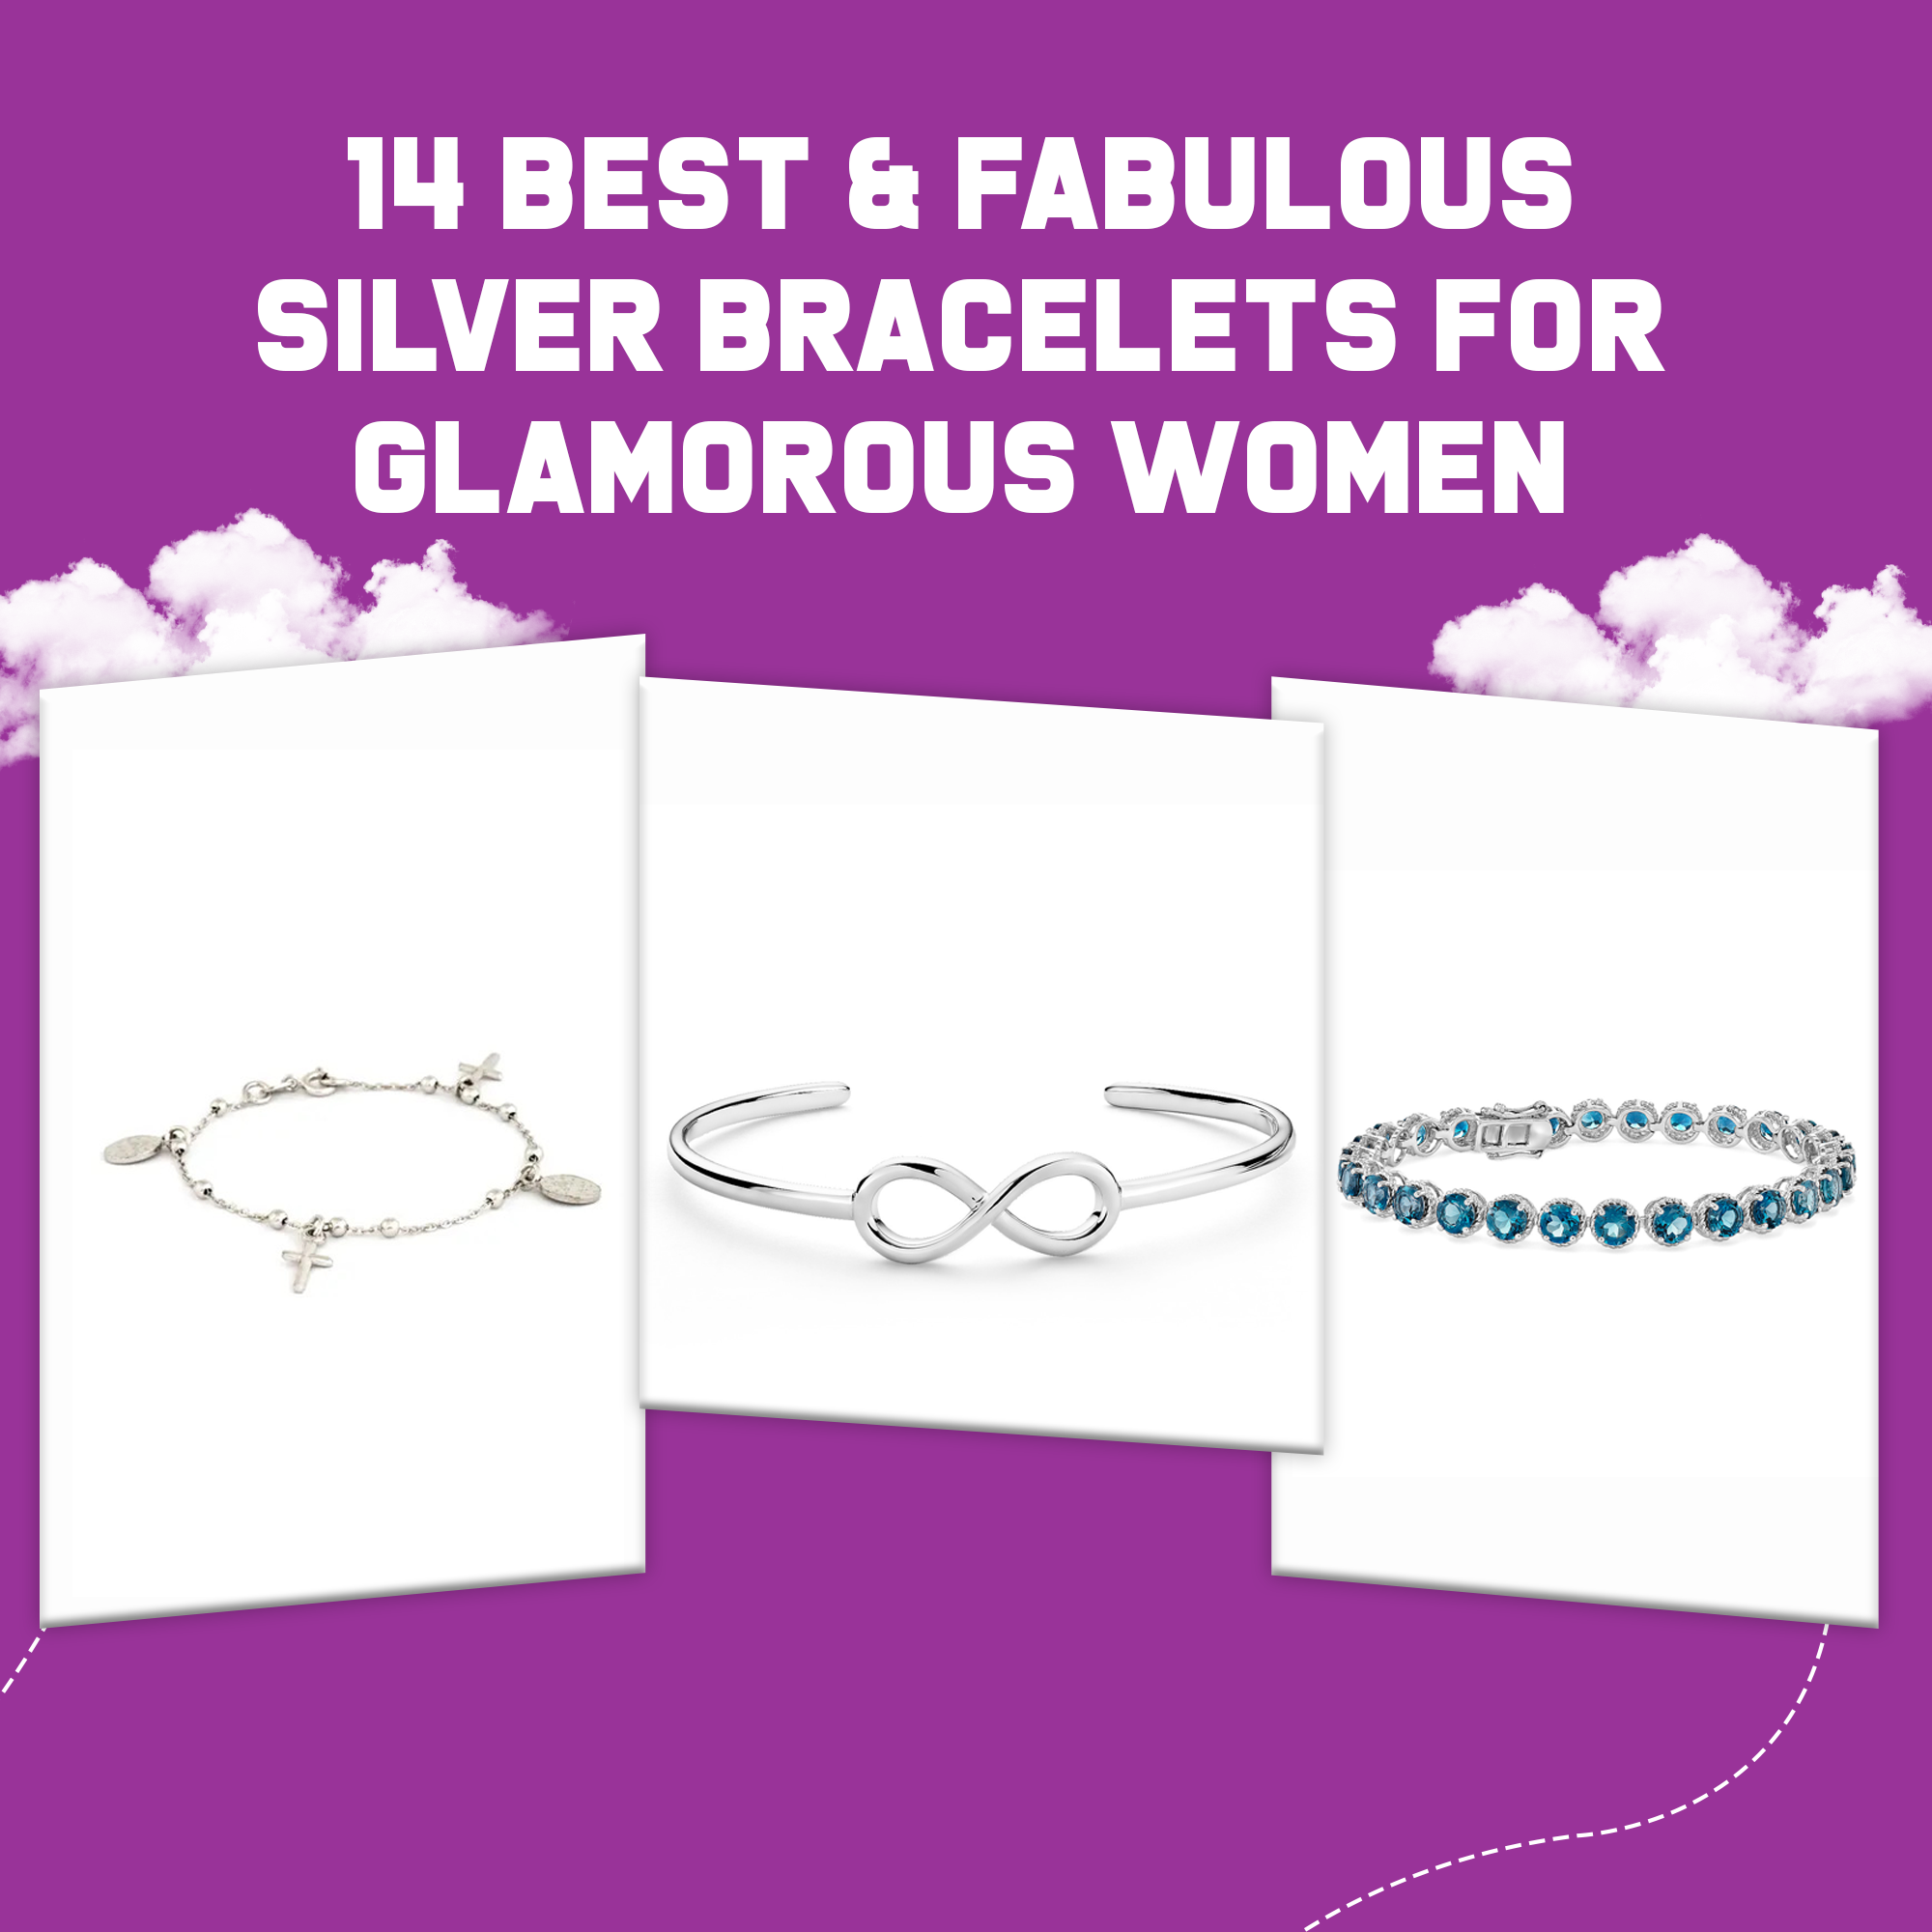 14 Best & Fabulous Silver Bracelets for Glamorous Women